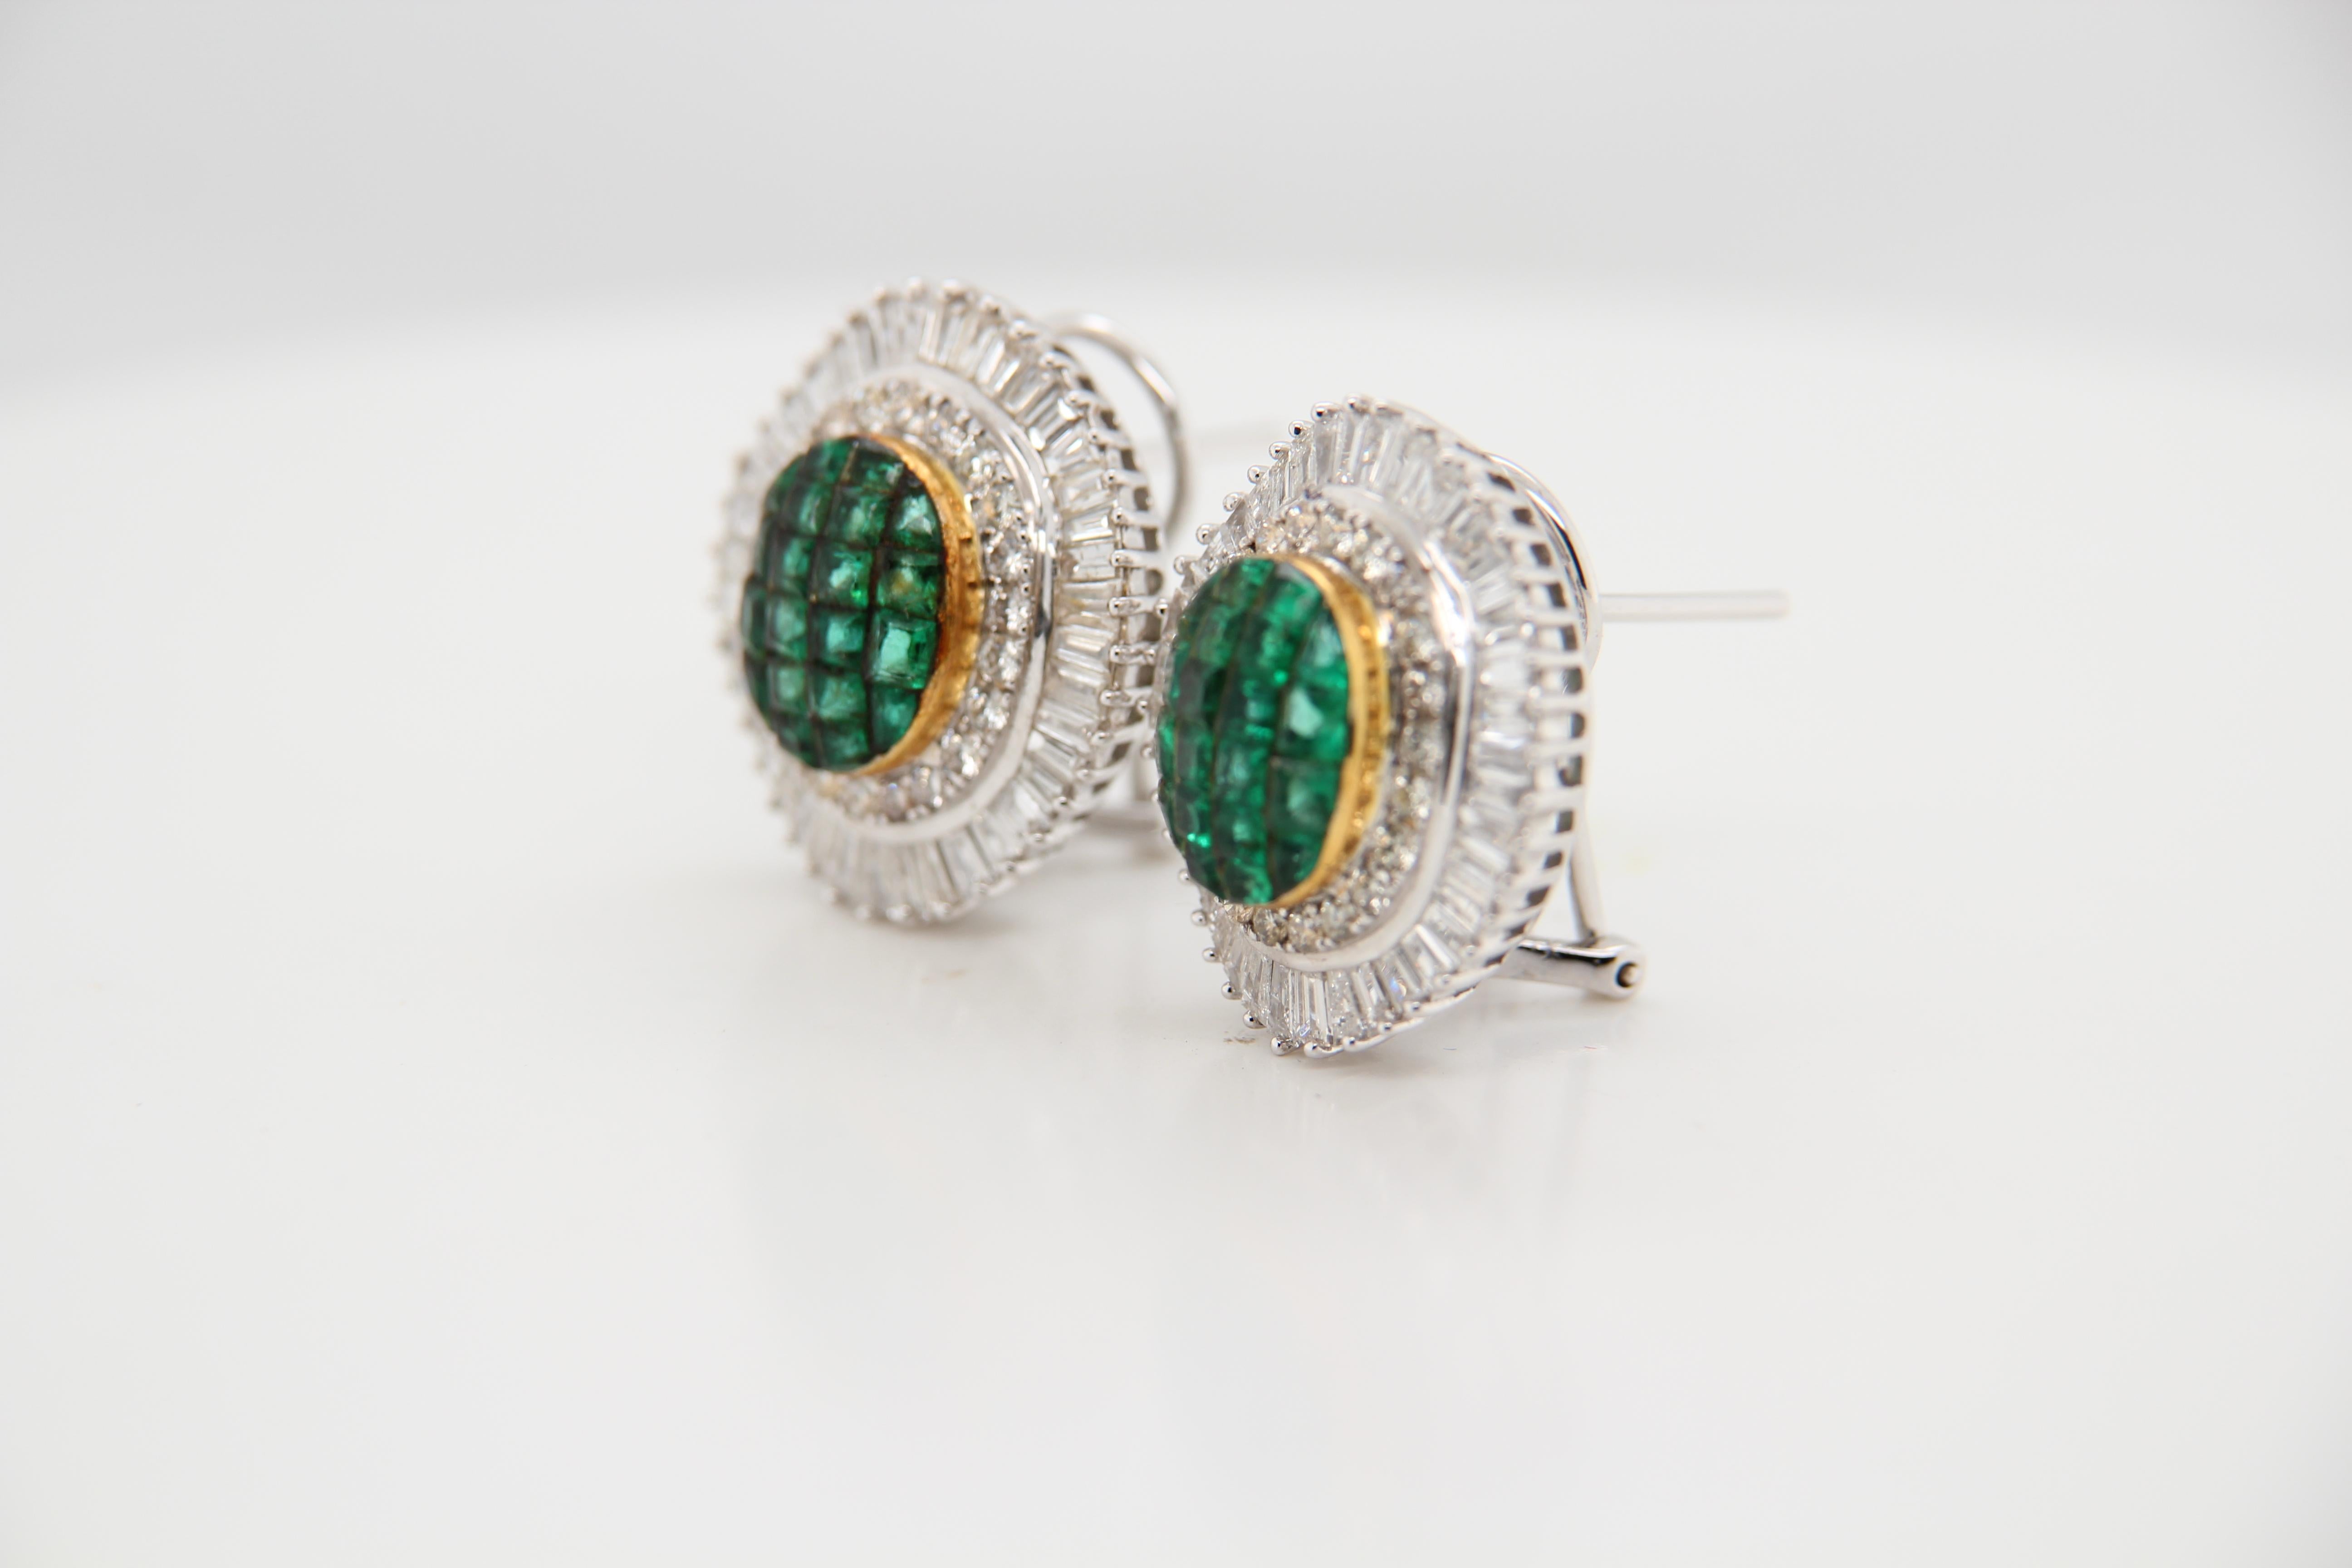 Ein Ohrring mit Smaragd und Diamanten. Der Ohrring ist mit 7,00 Karat Smaragden und 3,65 Karat Diamanten besetzt. Der Ohrring ist aus 18 Karat Weißgold mit einem Bruttogewicht von 15,56 g gefertigt.